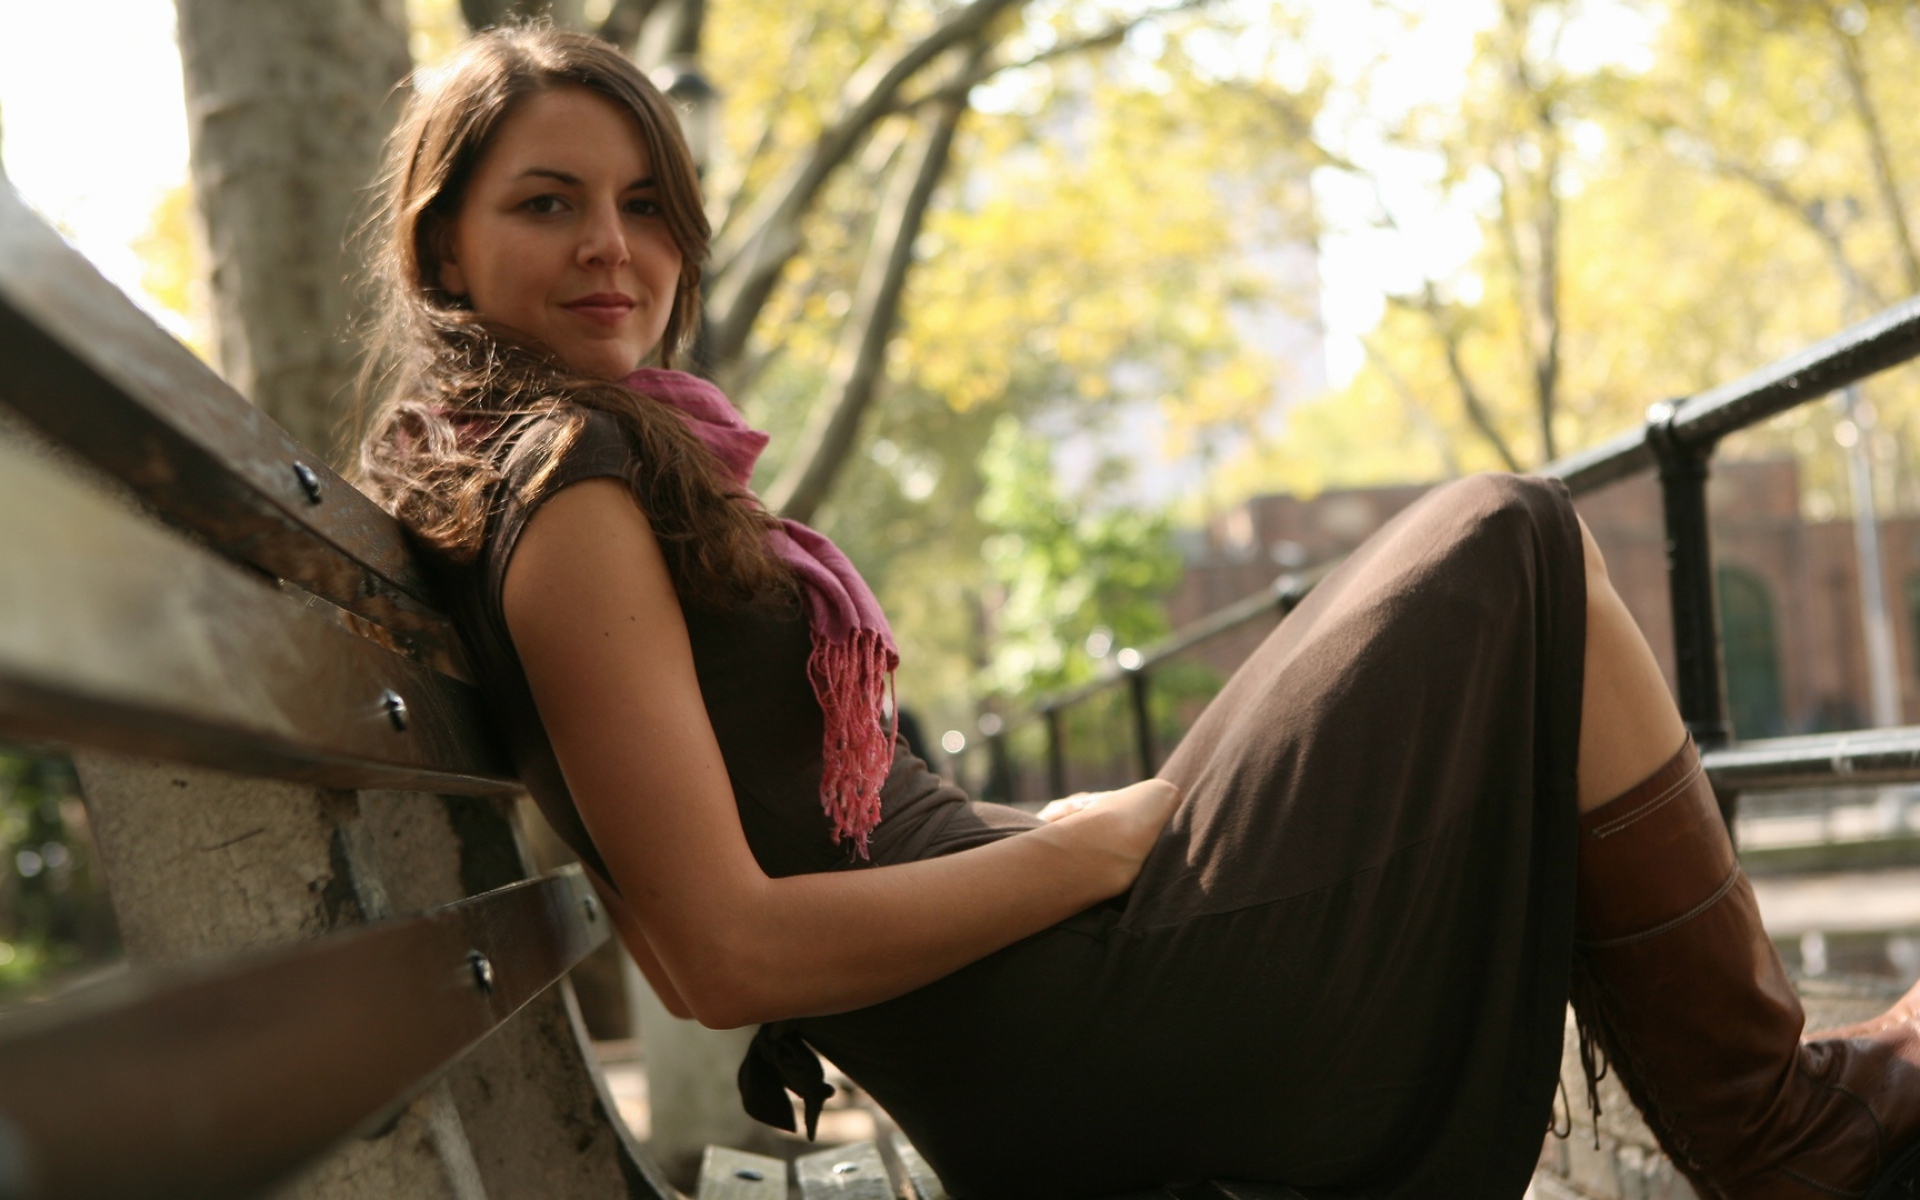 Красивая смелая добрая. Лодс Франк Лиа. Девушка на скамейке. Девушка на лавке в парке. Фотосессия девушки в парке.